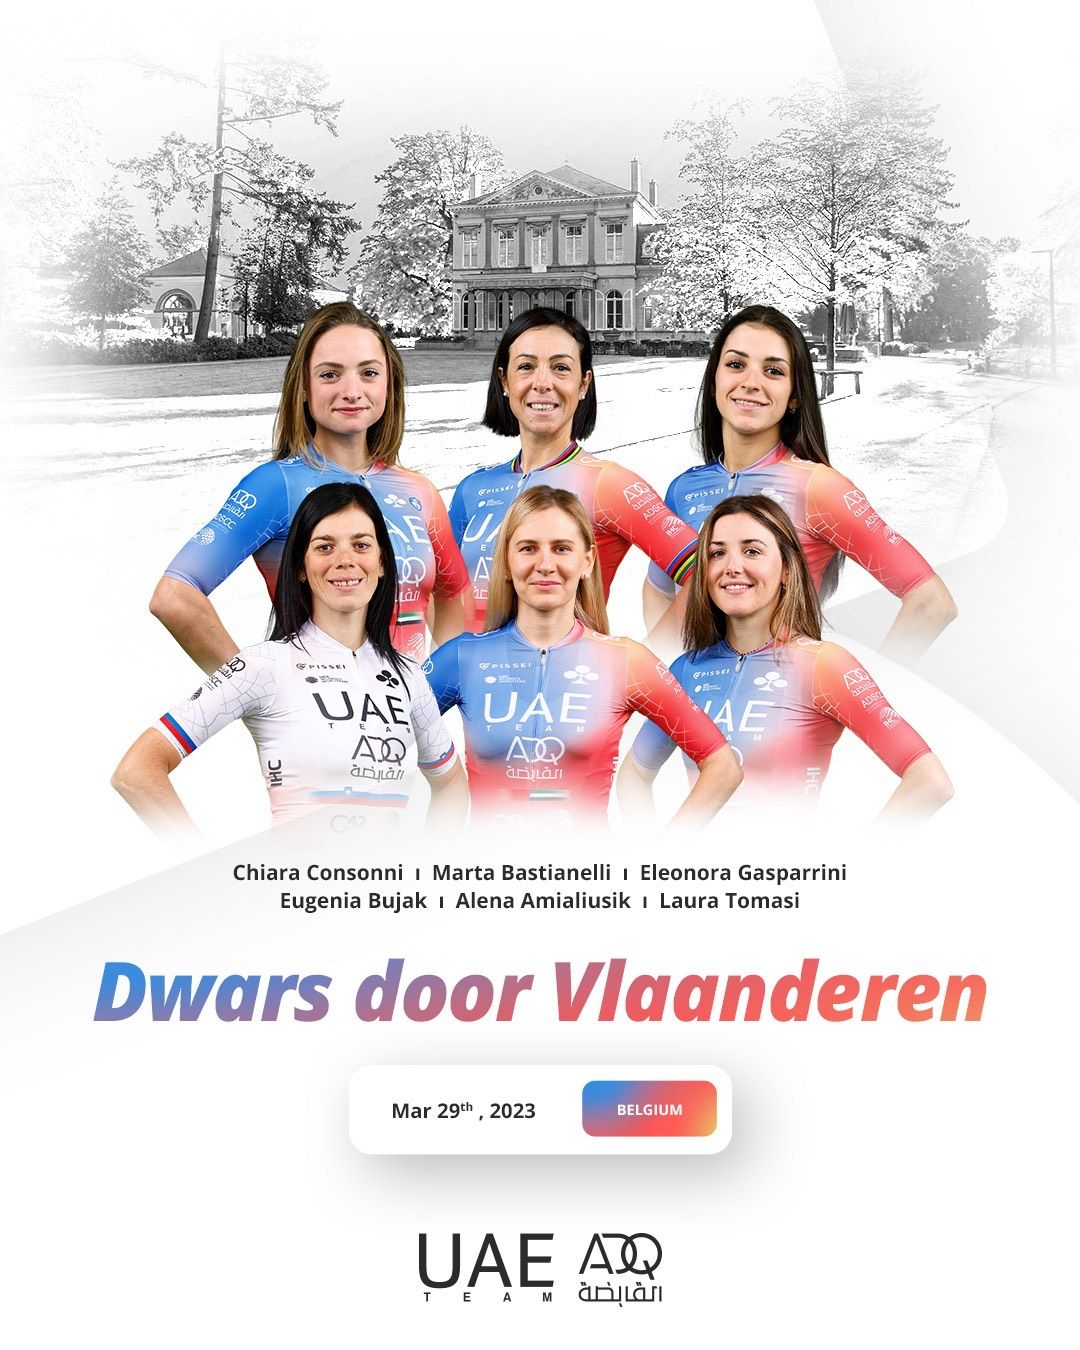 team-for-dwars-door-vlaanderen-and-tour-of-flanders